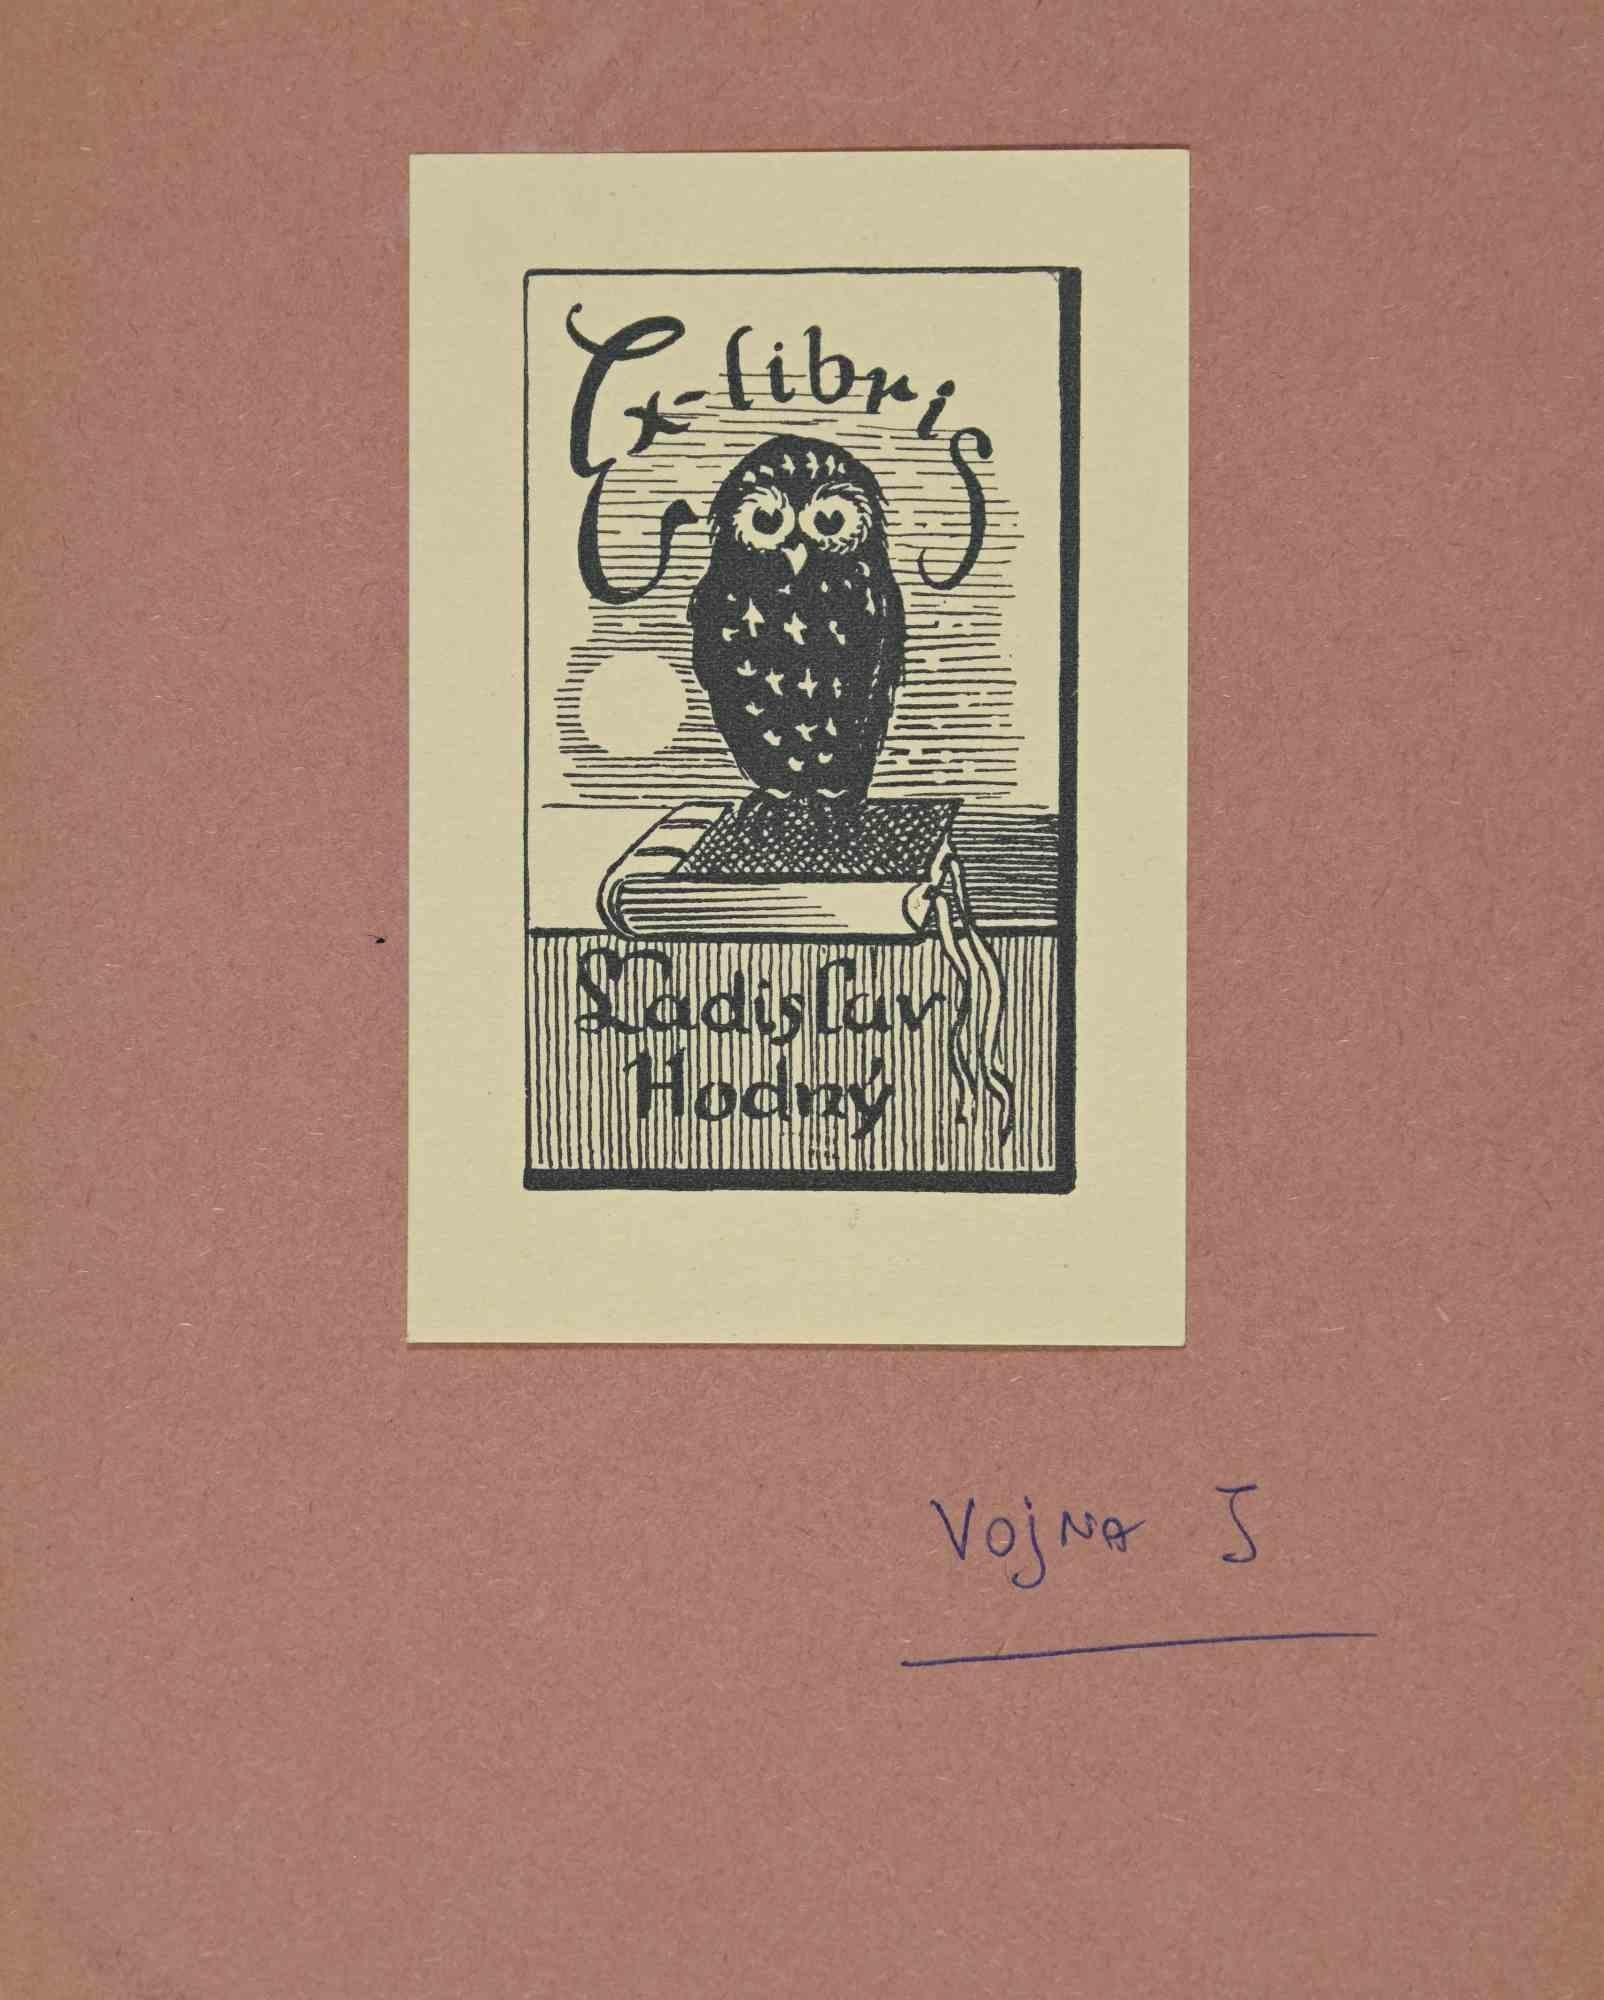 Ex Libris - Ladislav Hodny ist ein Kunstwerk, das in den 1950er Jahren von dem tschechischen Künstler Jaroslav Vojna geschaffen wurde. 

Holzschnitt B./W. Druck auf Elfenbeinpapier. Signiert auf der Platte auf der Rückseite. Das Werk ist auf